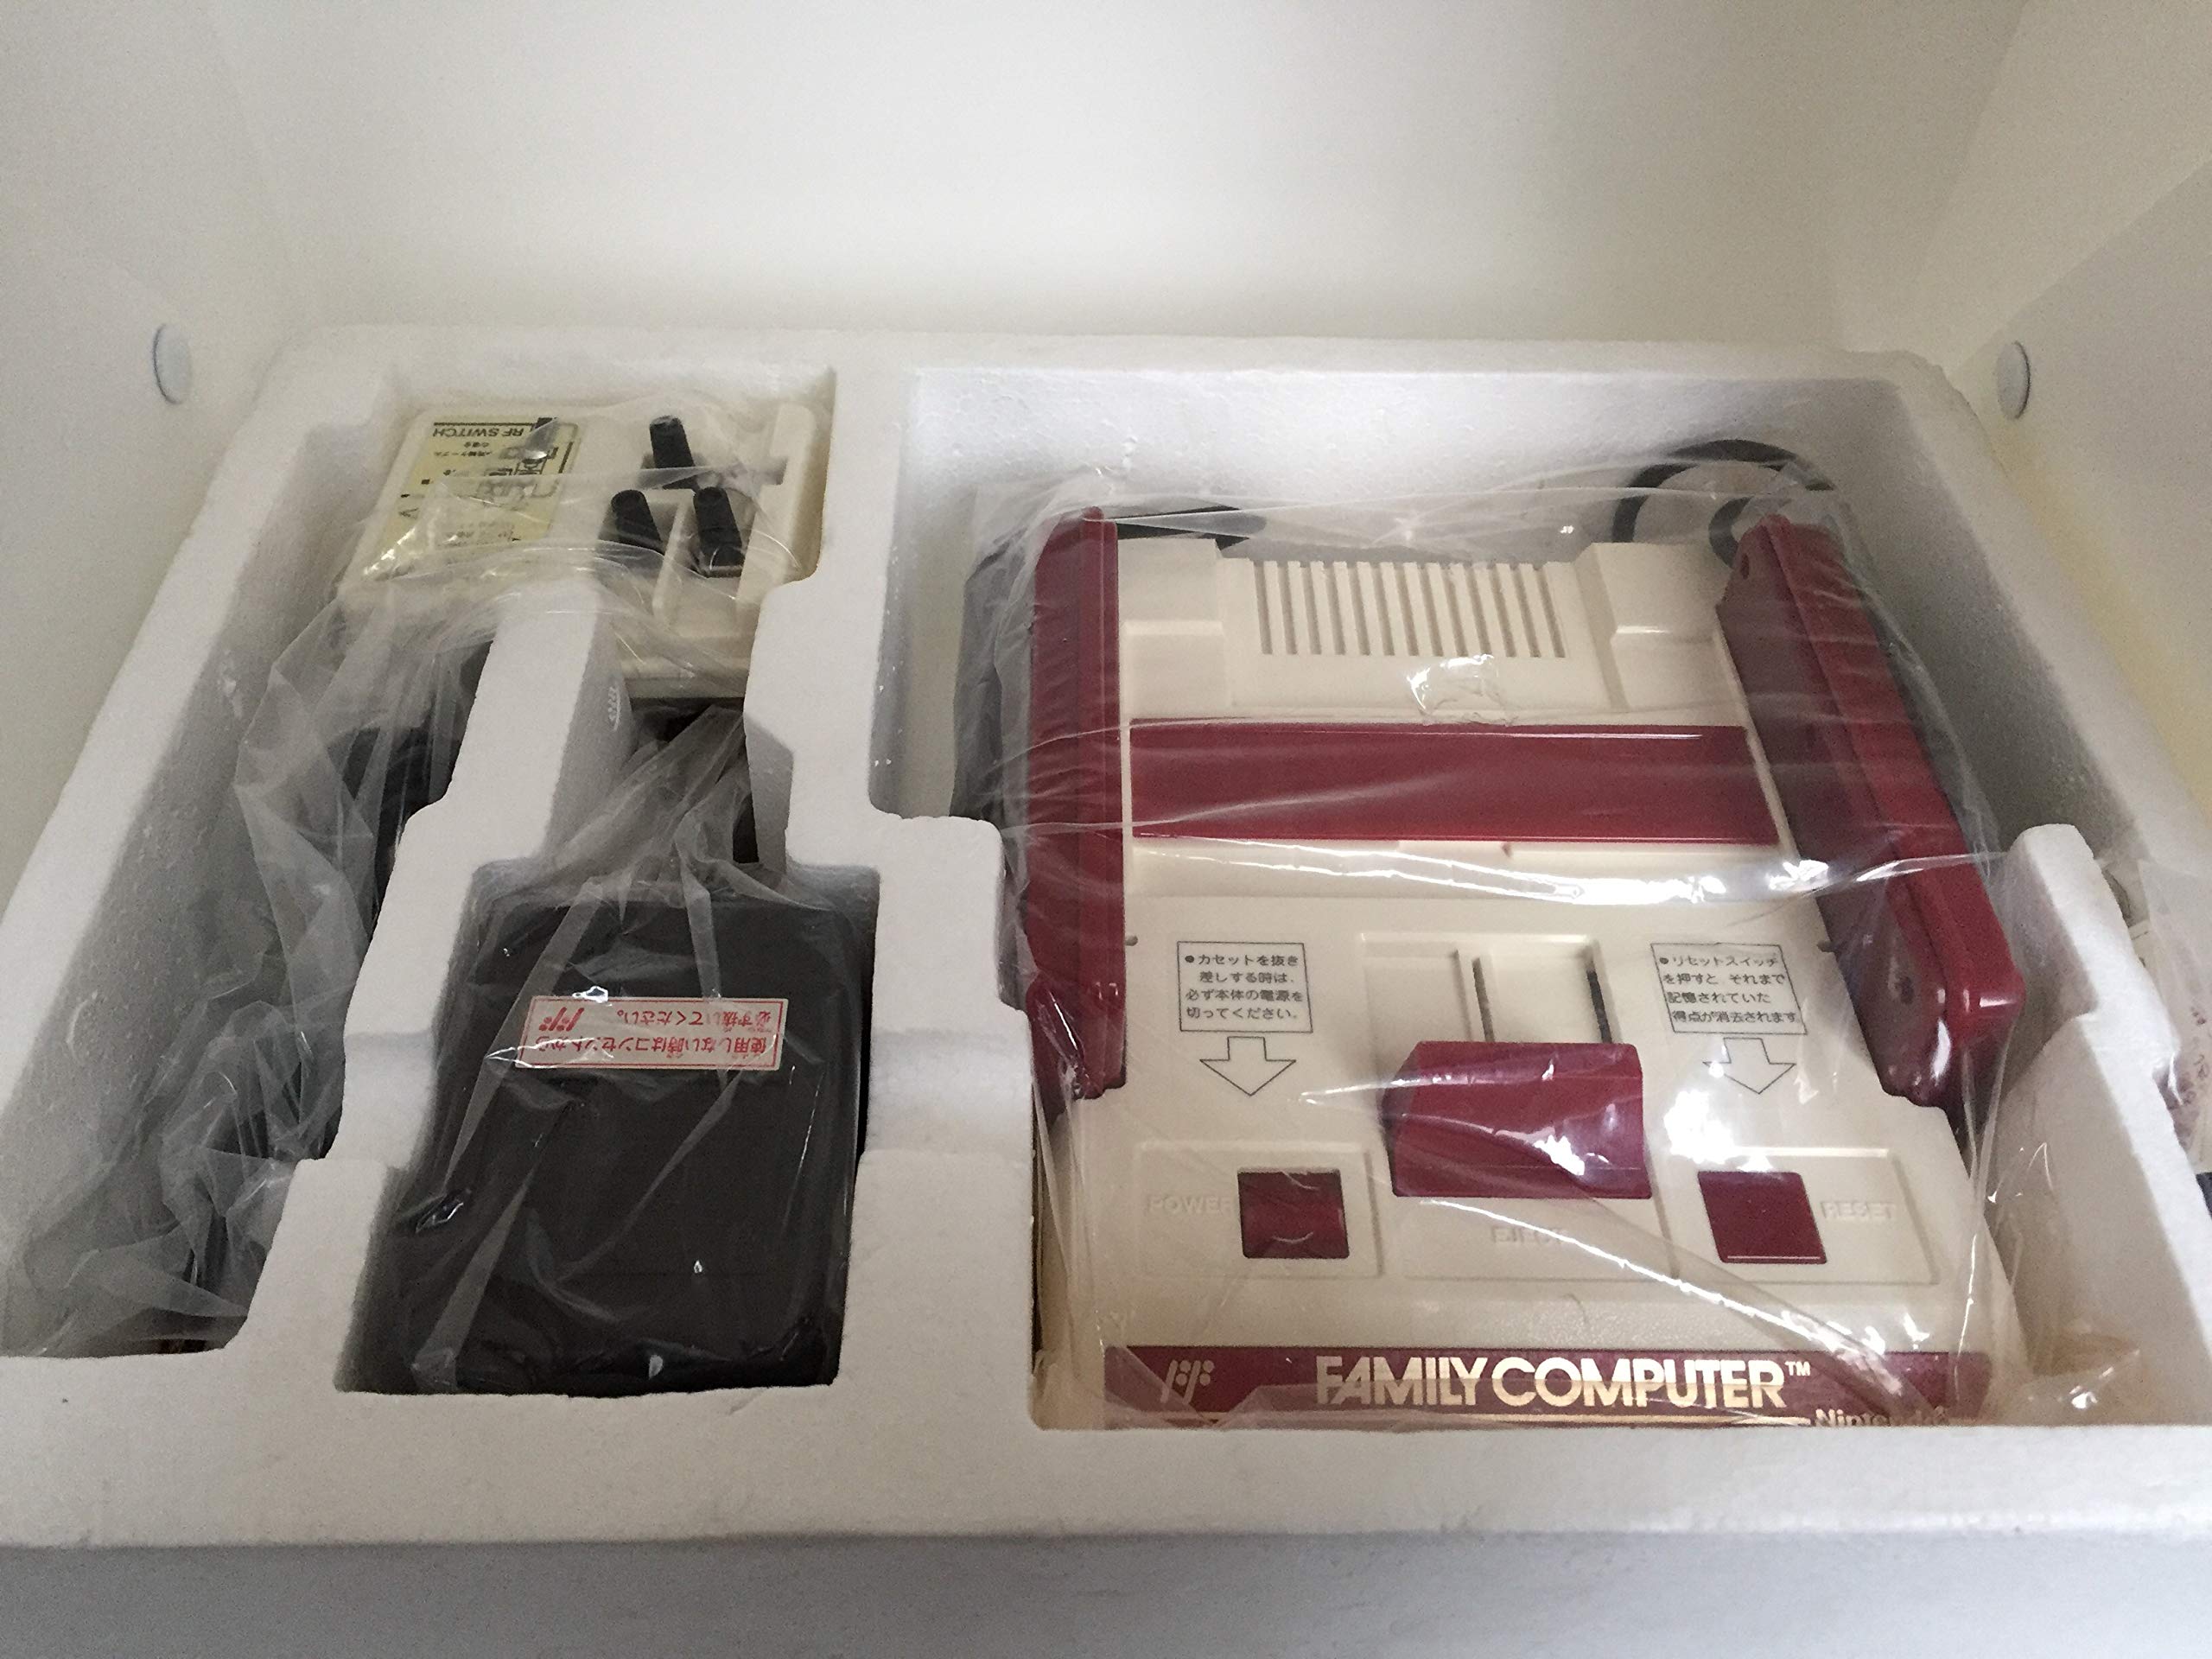 Nintendo Famicom (Family Computer System), Original 1983 Japanese Console